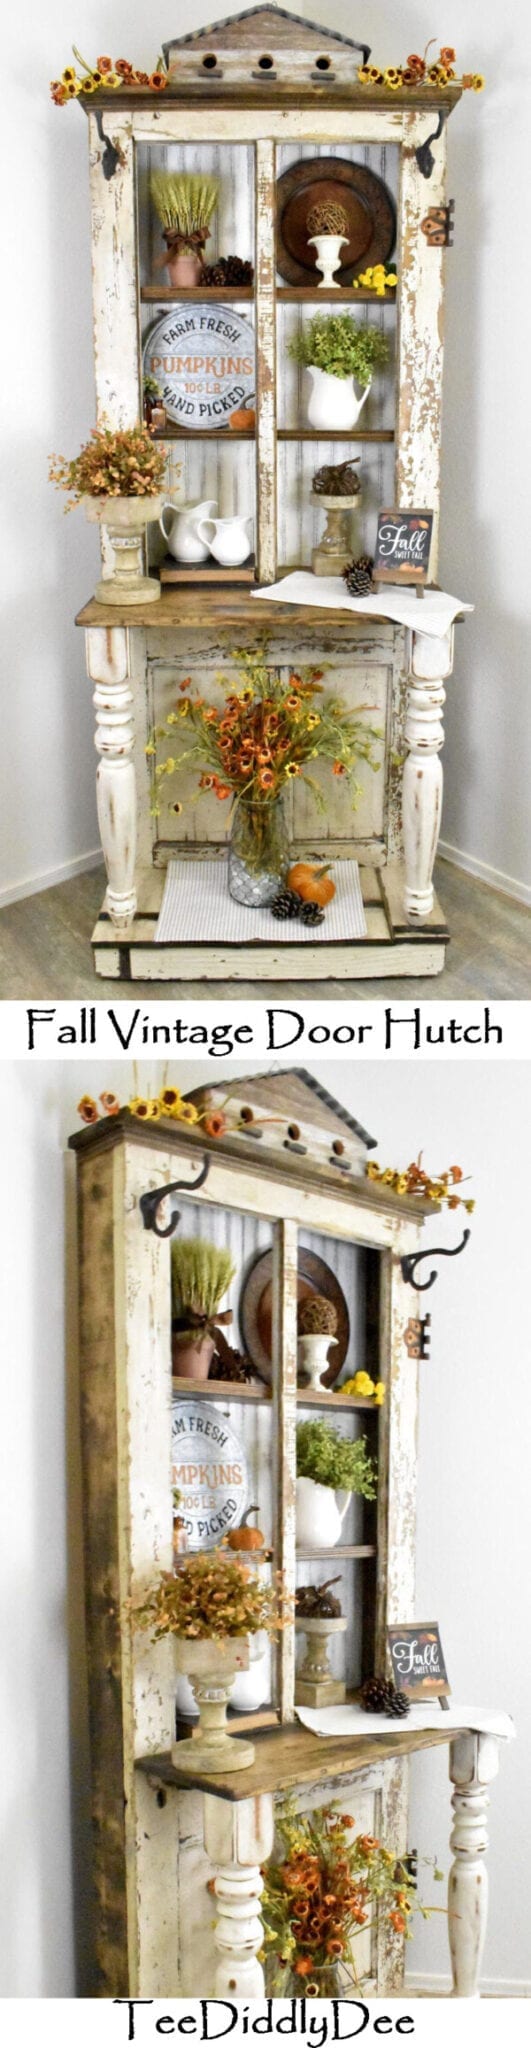 Fall Vintage Door Hutch